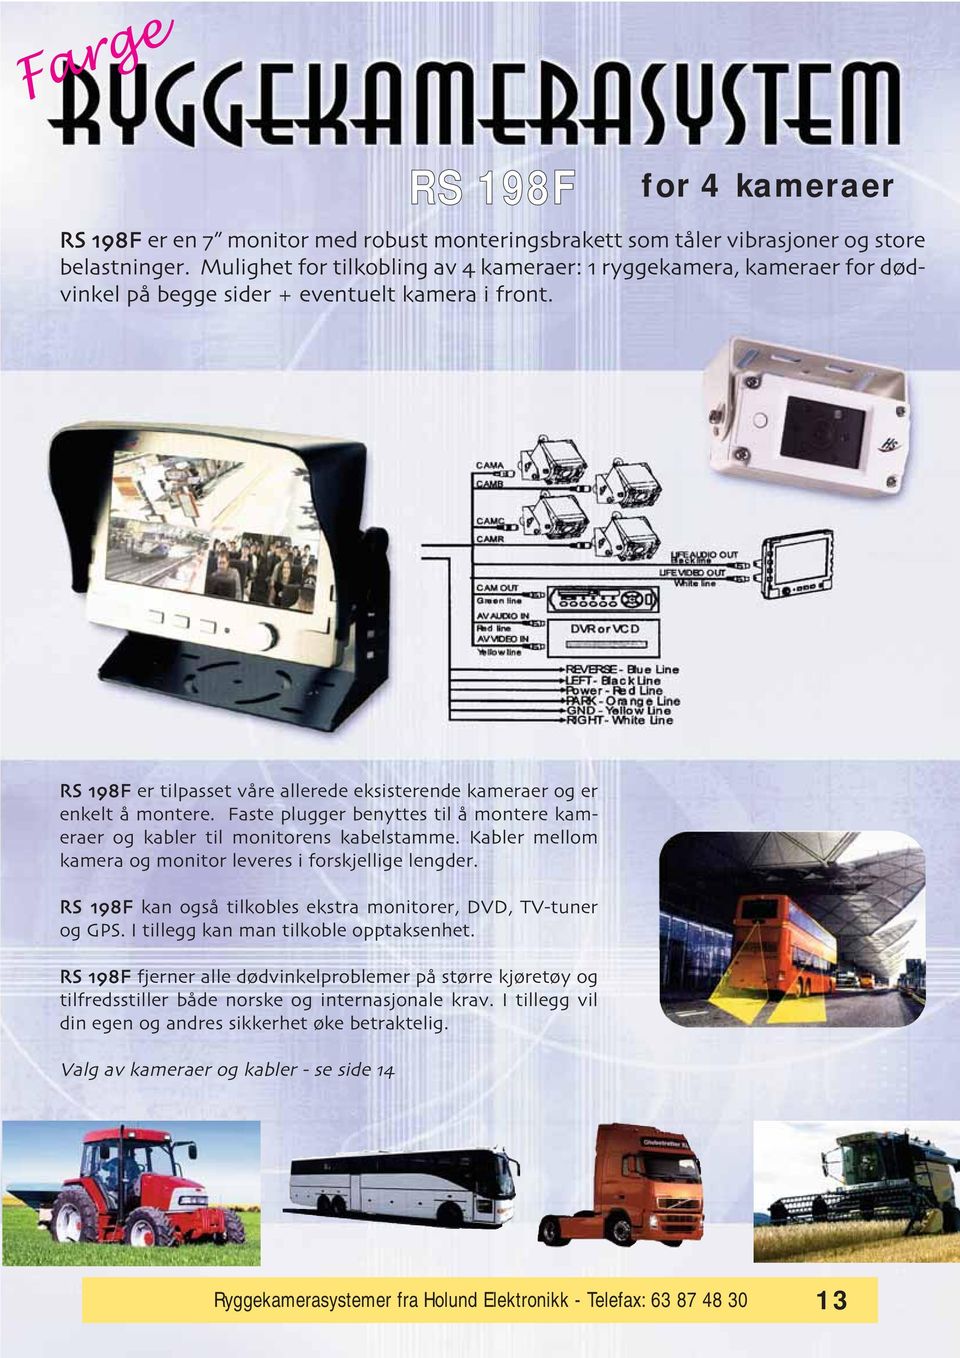 RS 198F er tilpasset va re allerede eksisterende kameraer og er enkelt a montere. Faste plugger benyttes til a montere kameraer og kabler til monitorens kabelstamme.